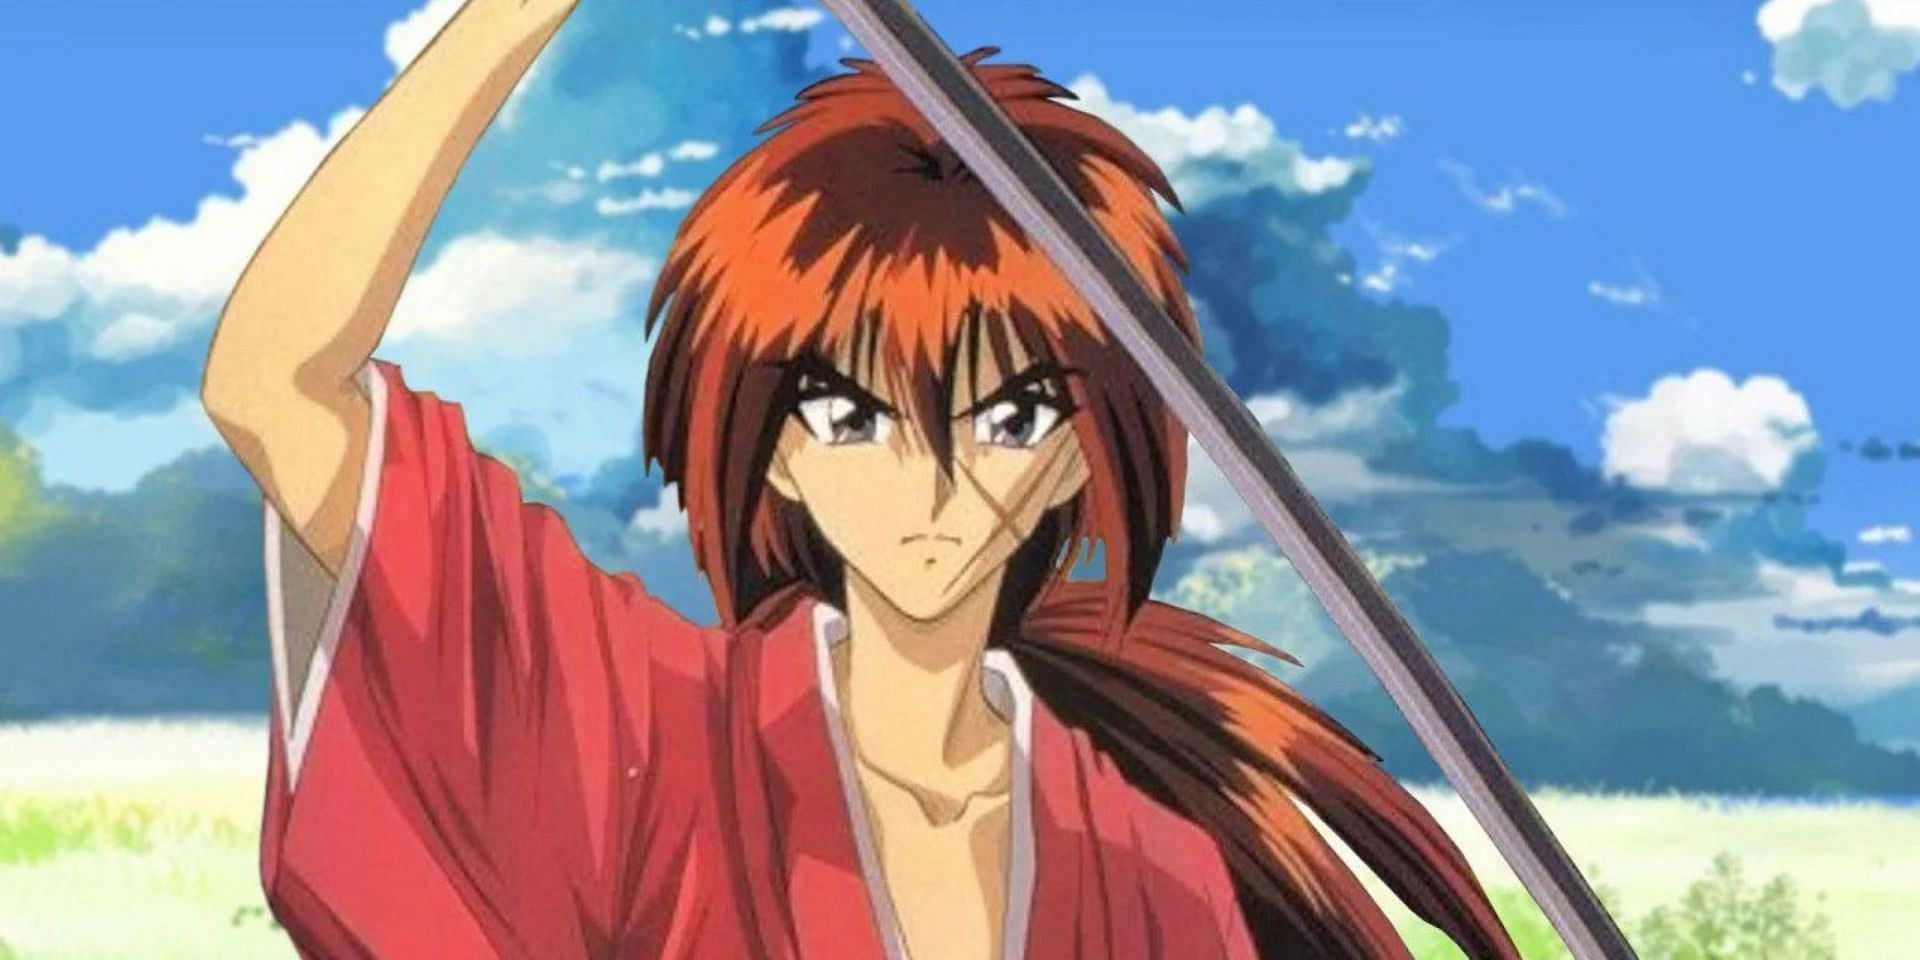 Kenshin Himura (Image via Nobuhiro Watsuki/Shueisha/Viz Media/Rurouni Kenshin)